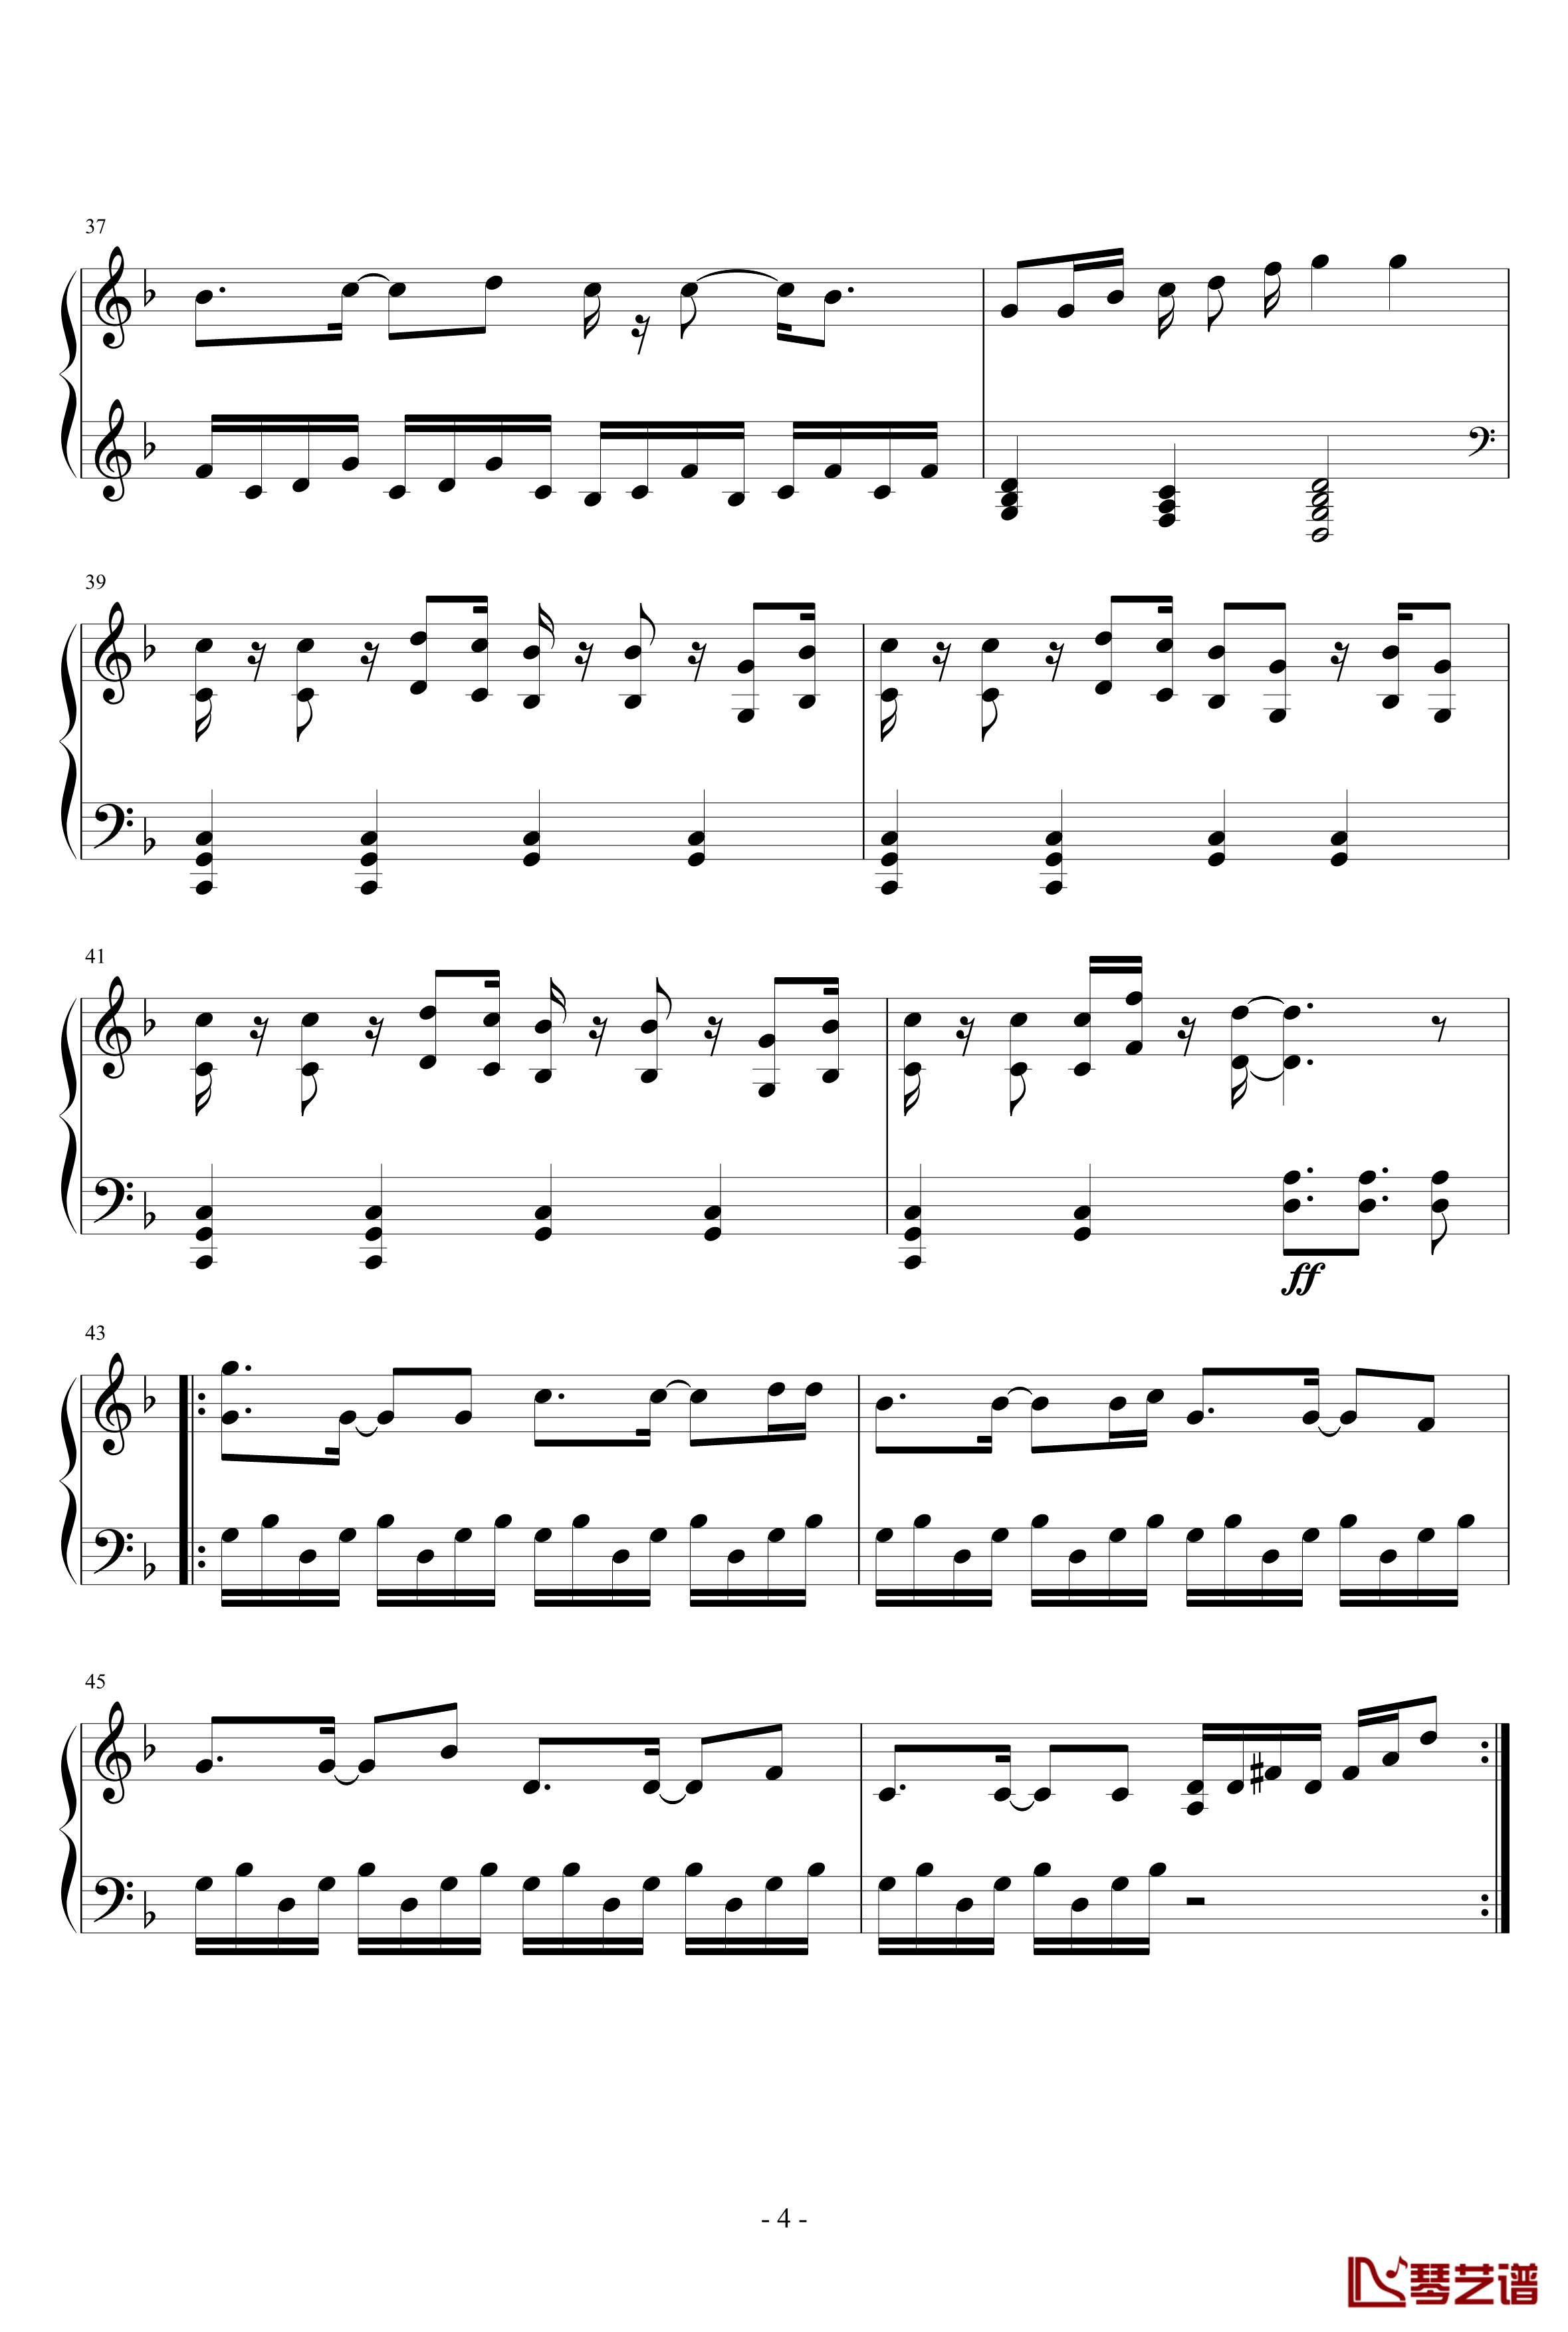 笑傲江湖钢琴谱-2012改版，完全钢琴可演奏，7级4